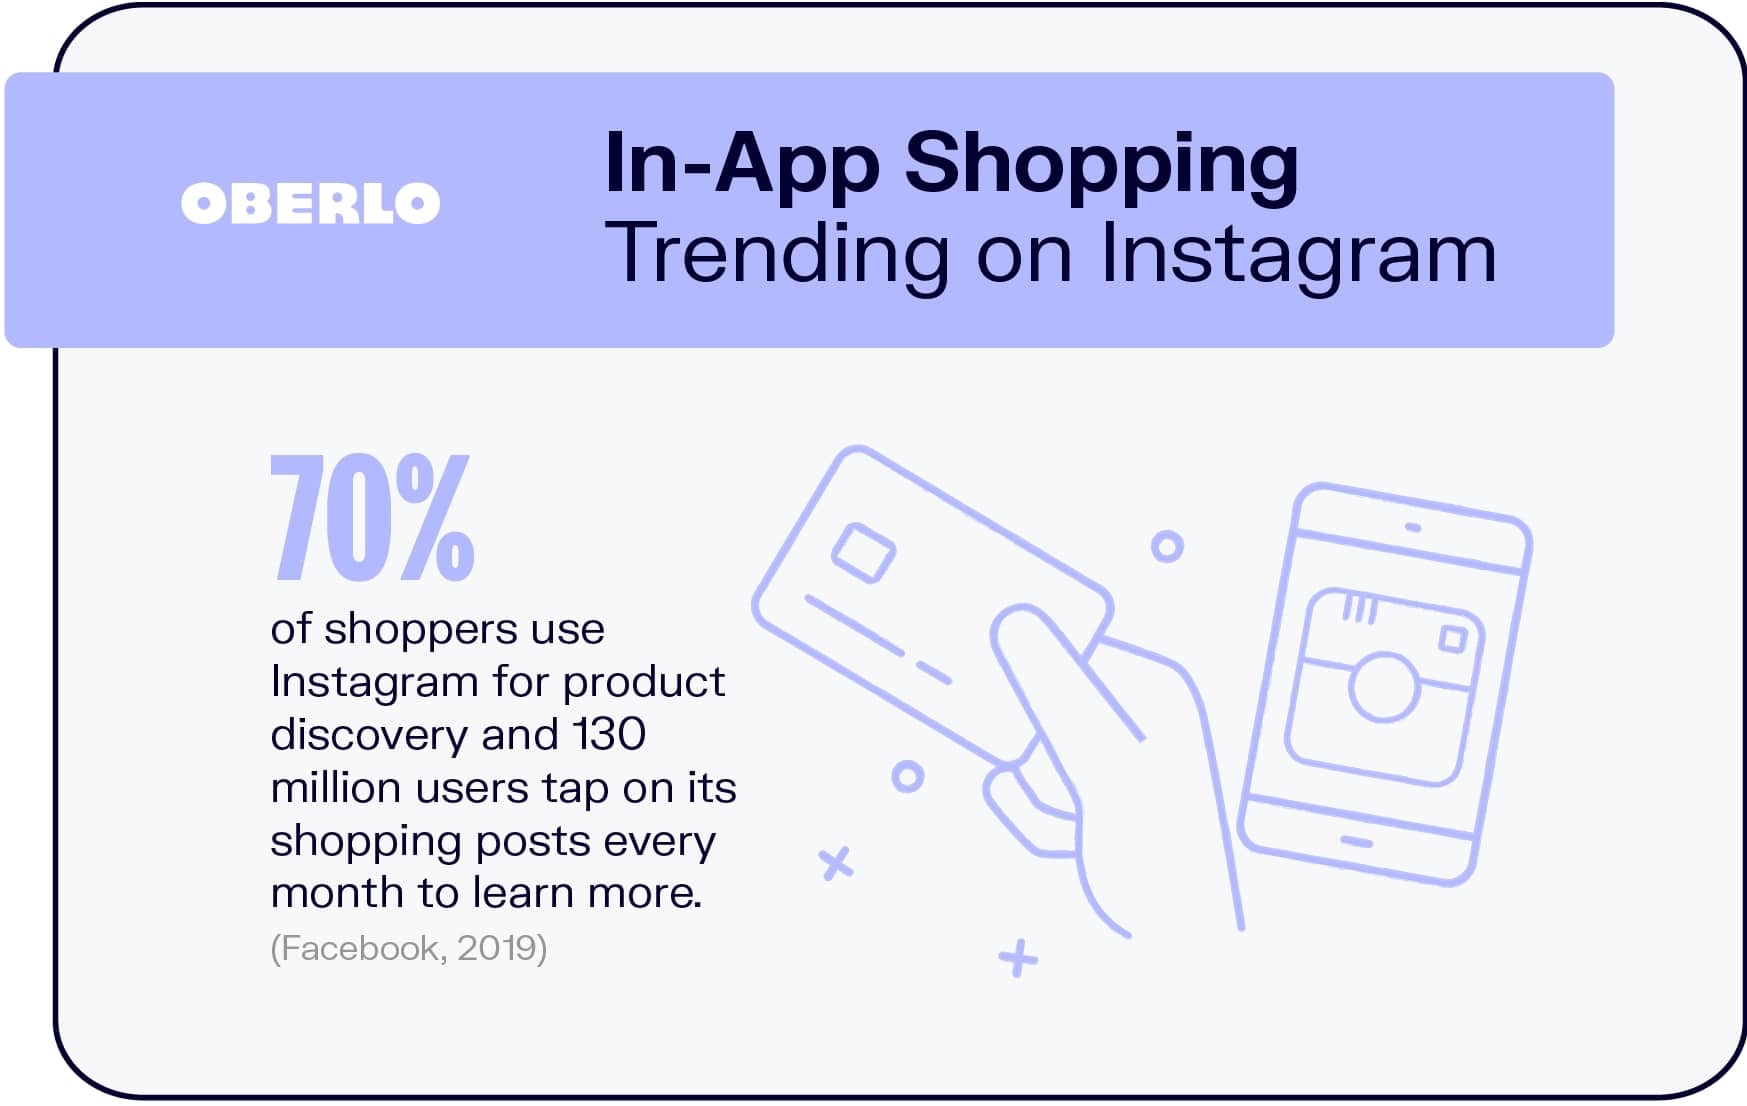 Tendencias de compras en la aplicación en Instagram